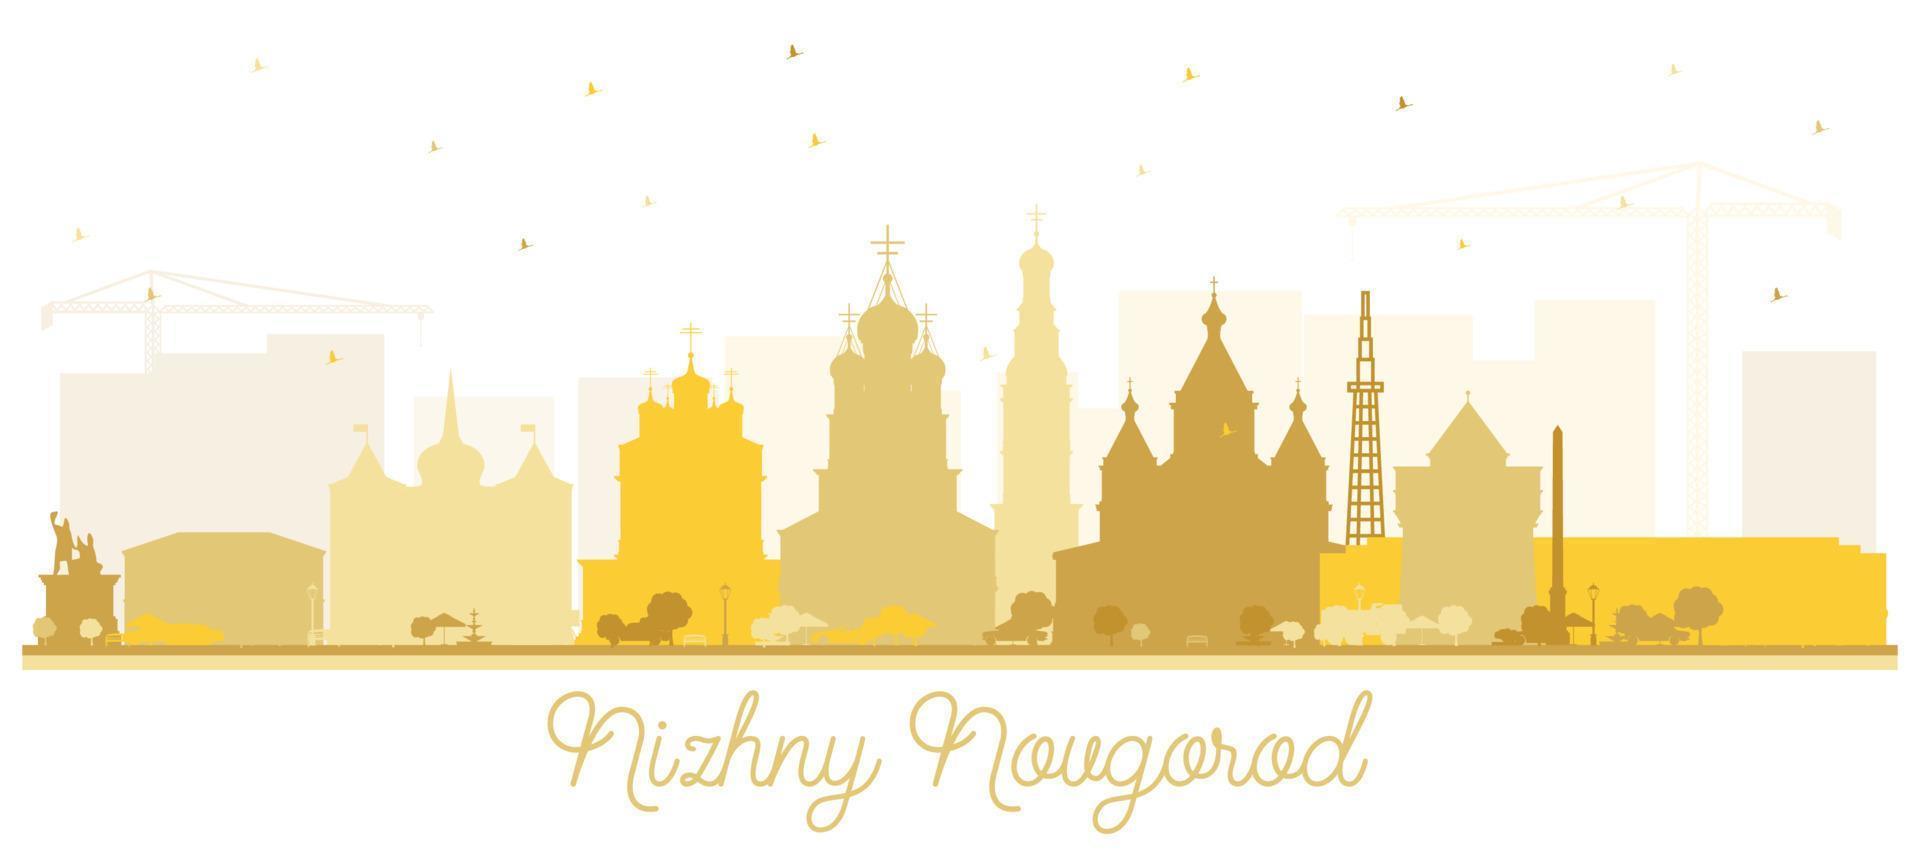 nizhny novgorod rússia cidade skyline silhueta com edifícios dourados isolados no fundo branco. vetor